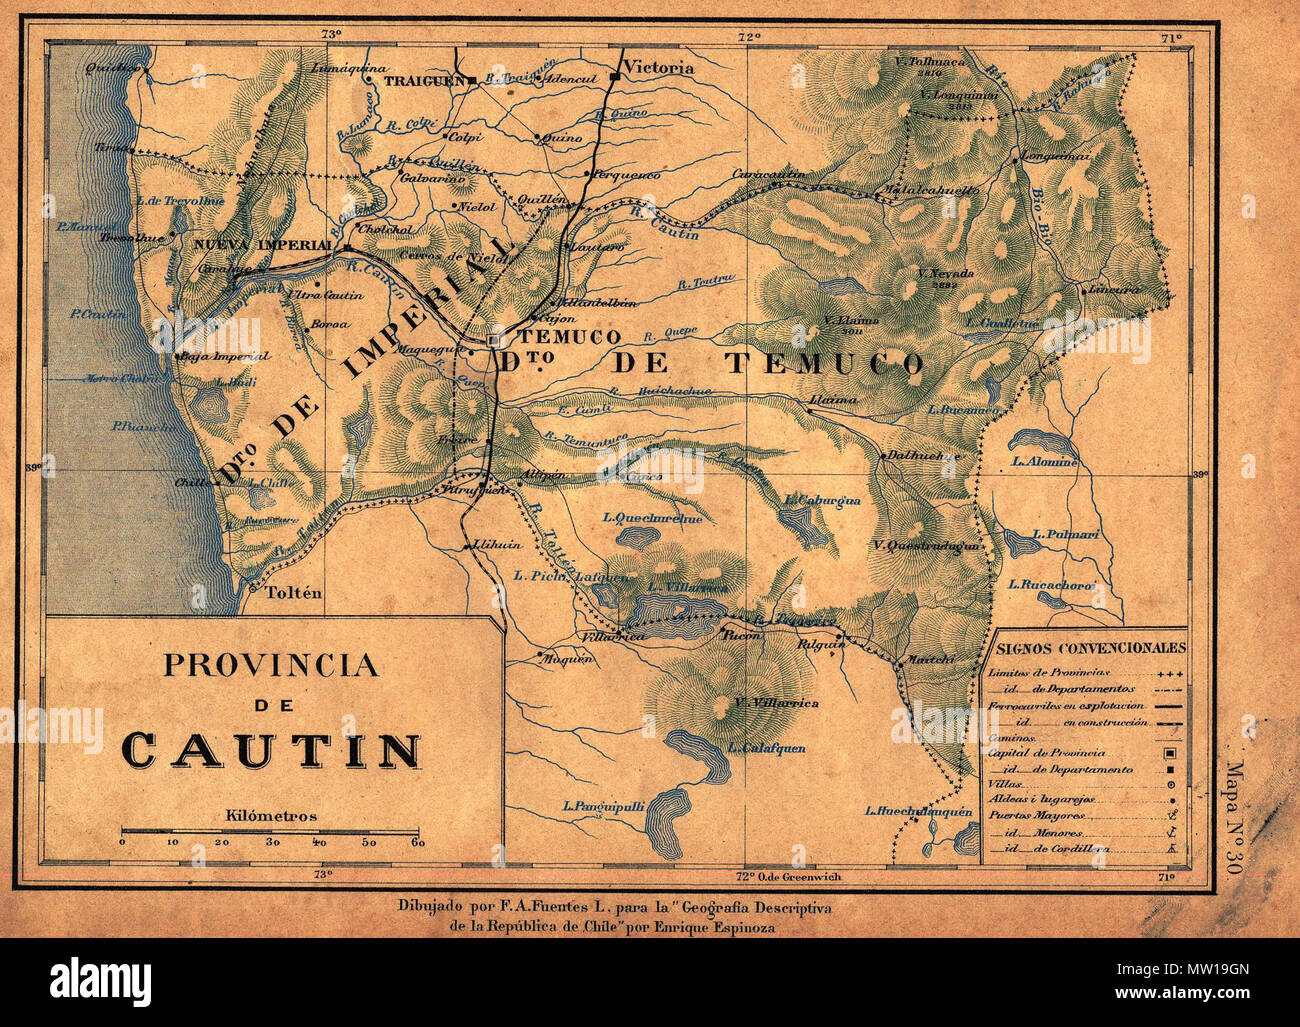 504 Provincia de Cautín - Geografía Descriptiva República de Chile - Enrique Espinoza 1897 Foto Stock